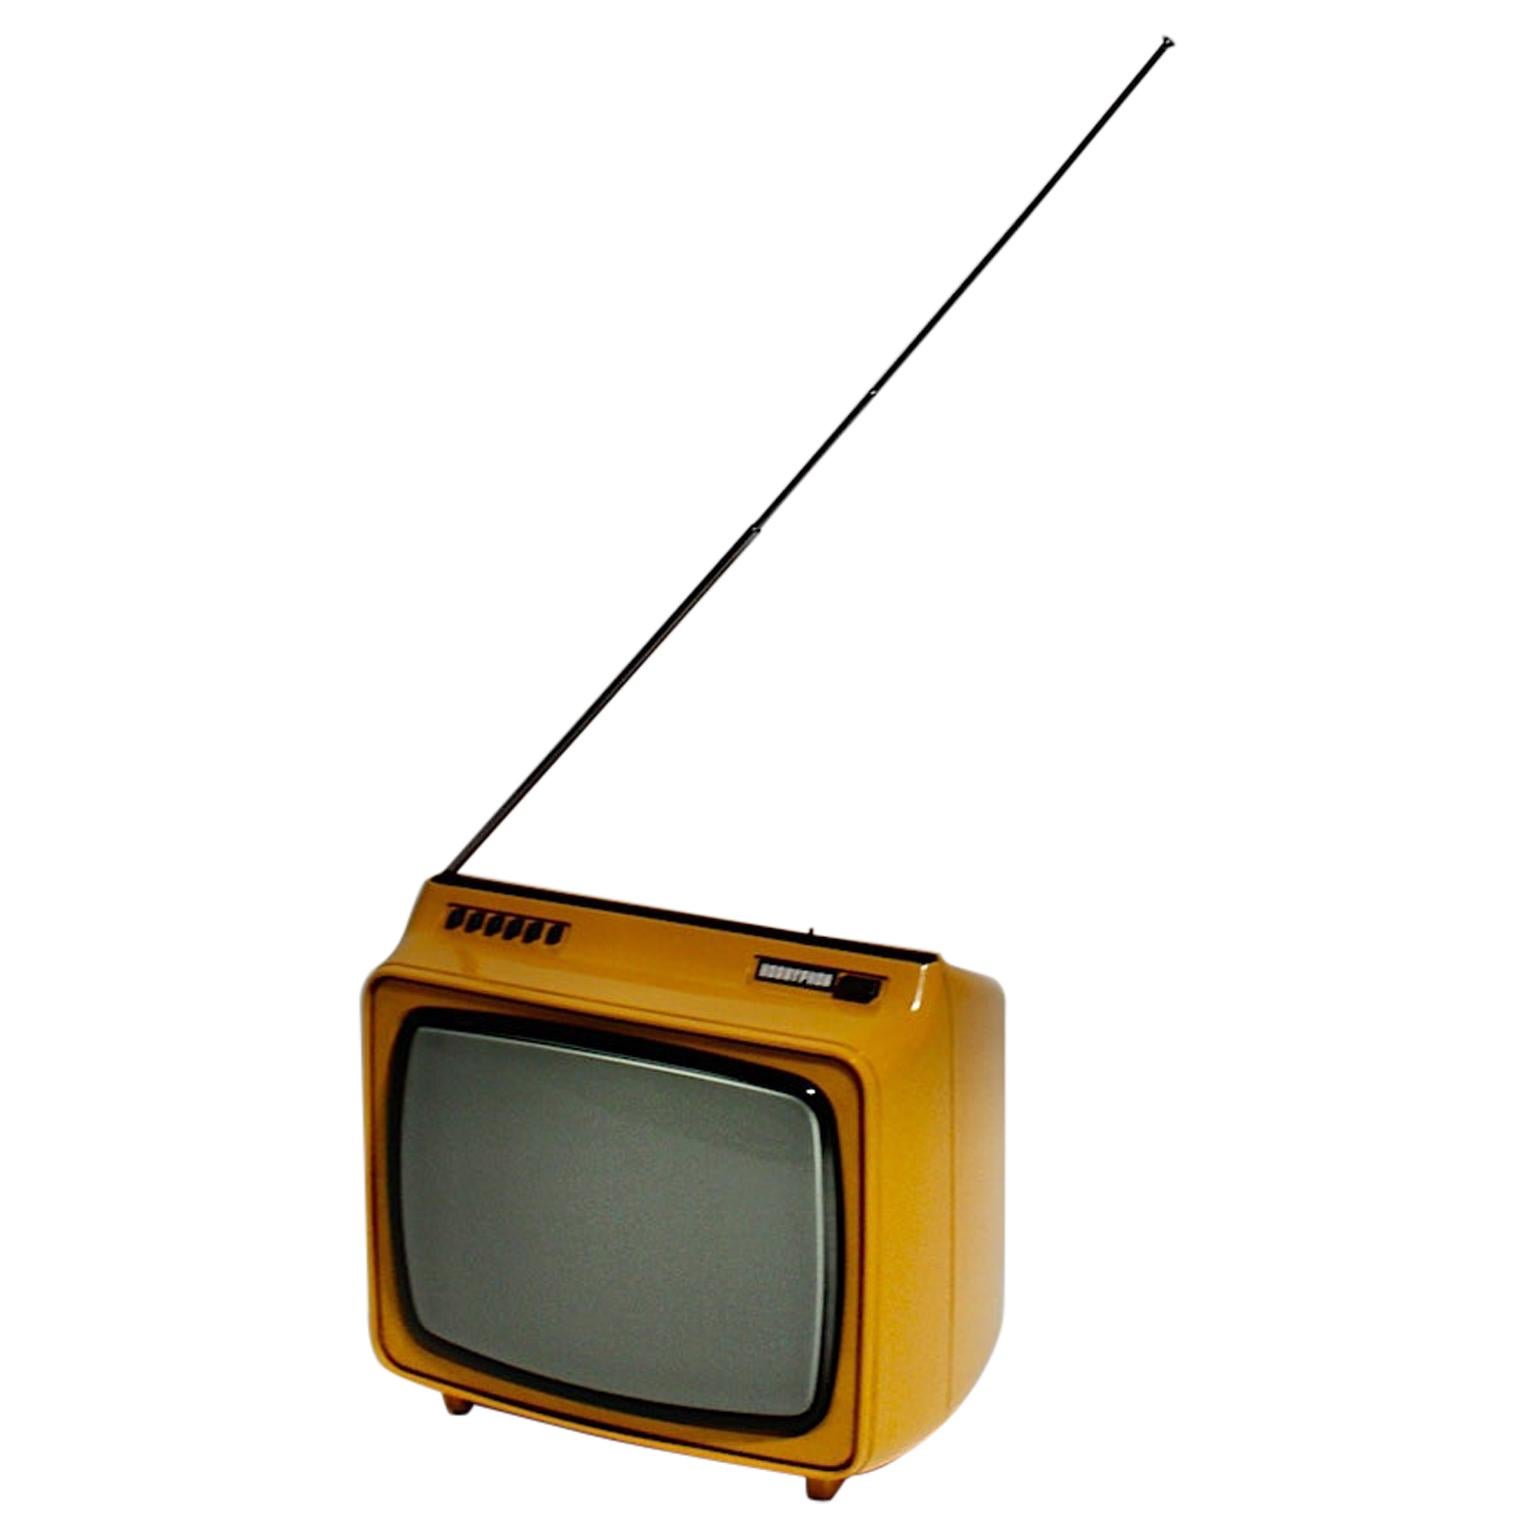 Hornyphon de télévision jaune de l'ère spatiale, 1970, Autriche